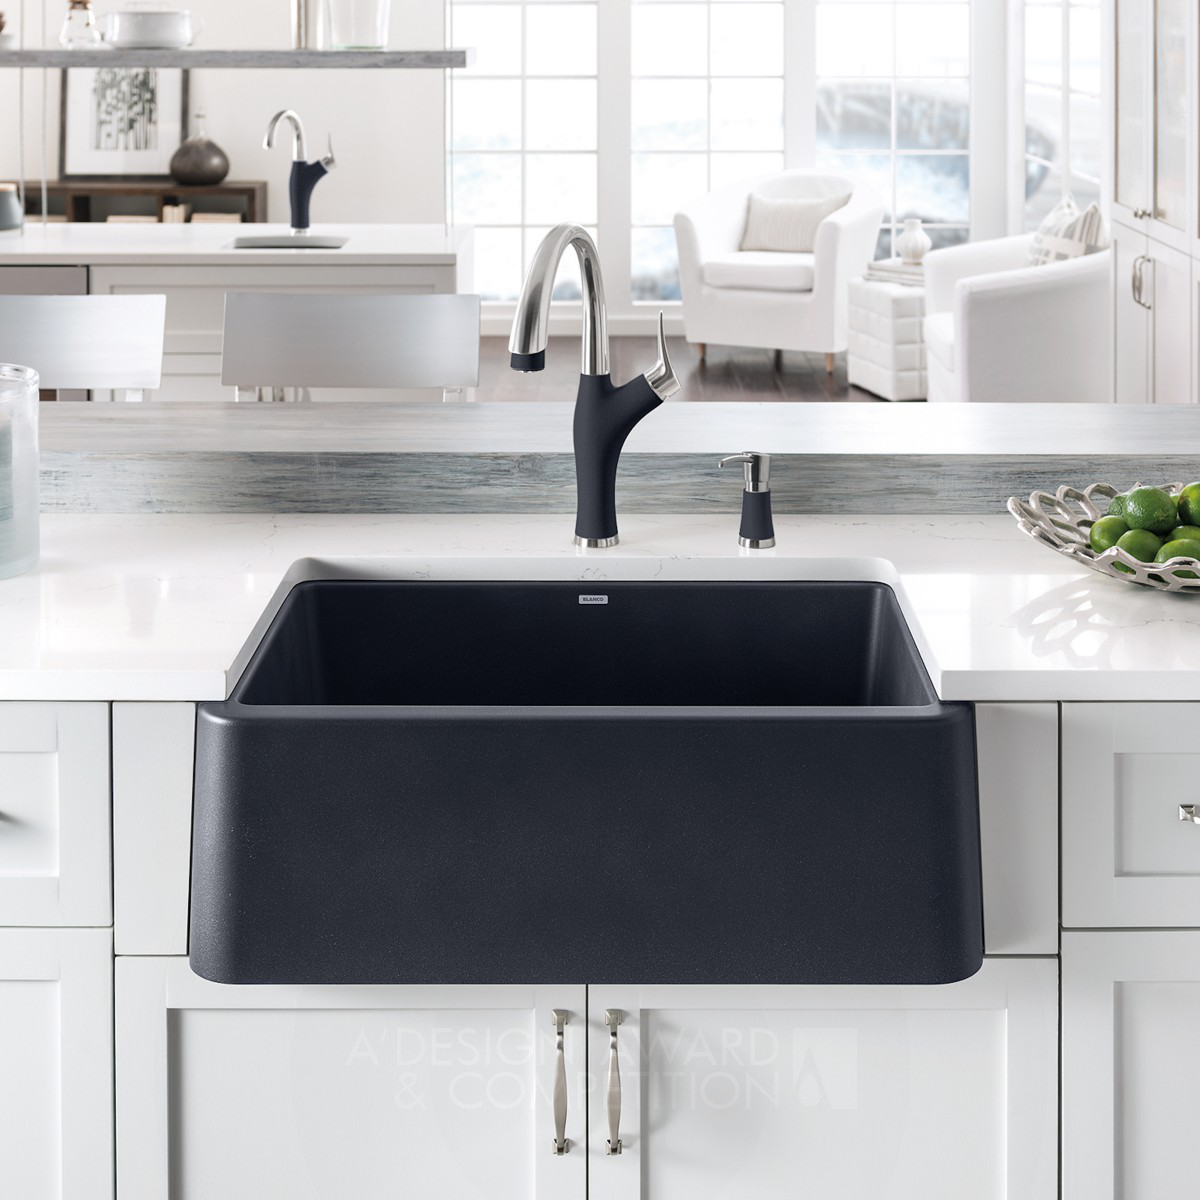 Blanco Ikon: A Revolution in Kitchen Sink Design